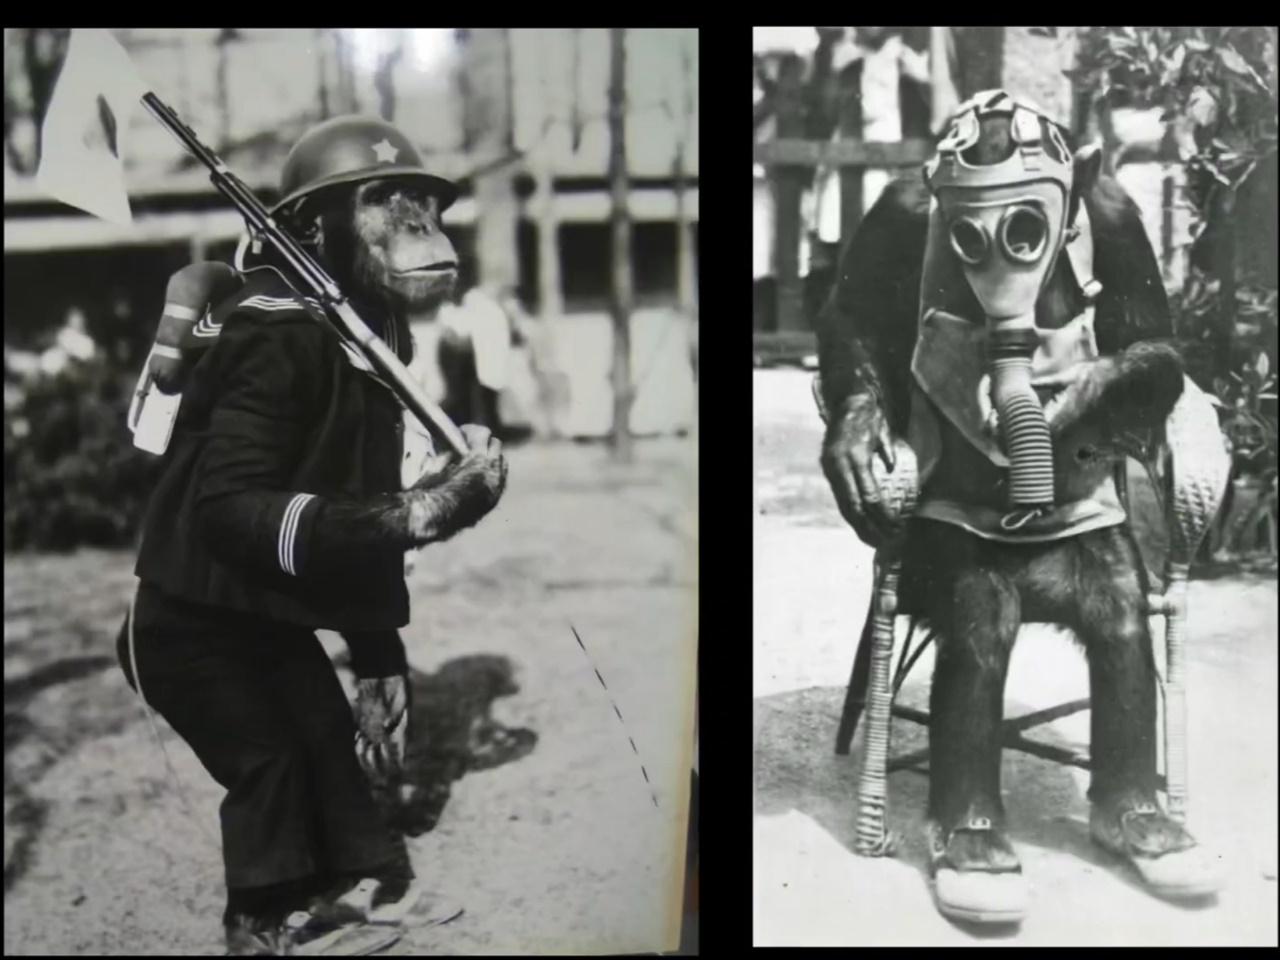 오사카 덴노지동물원의 침팬지 '로이드'와 '리타'는 시민들에게 인기가 많았다. 선전당국은 이들을 국민전의 고양의 도구로 이용하고자 했다.